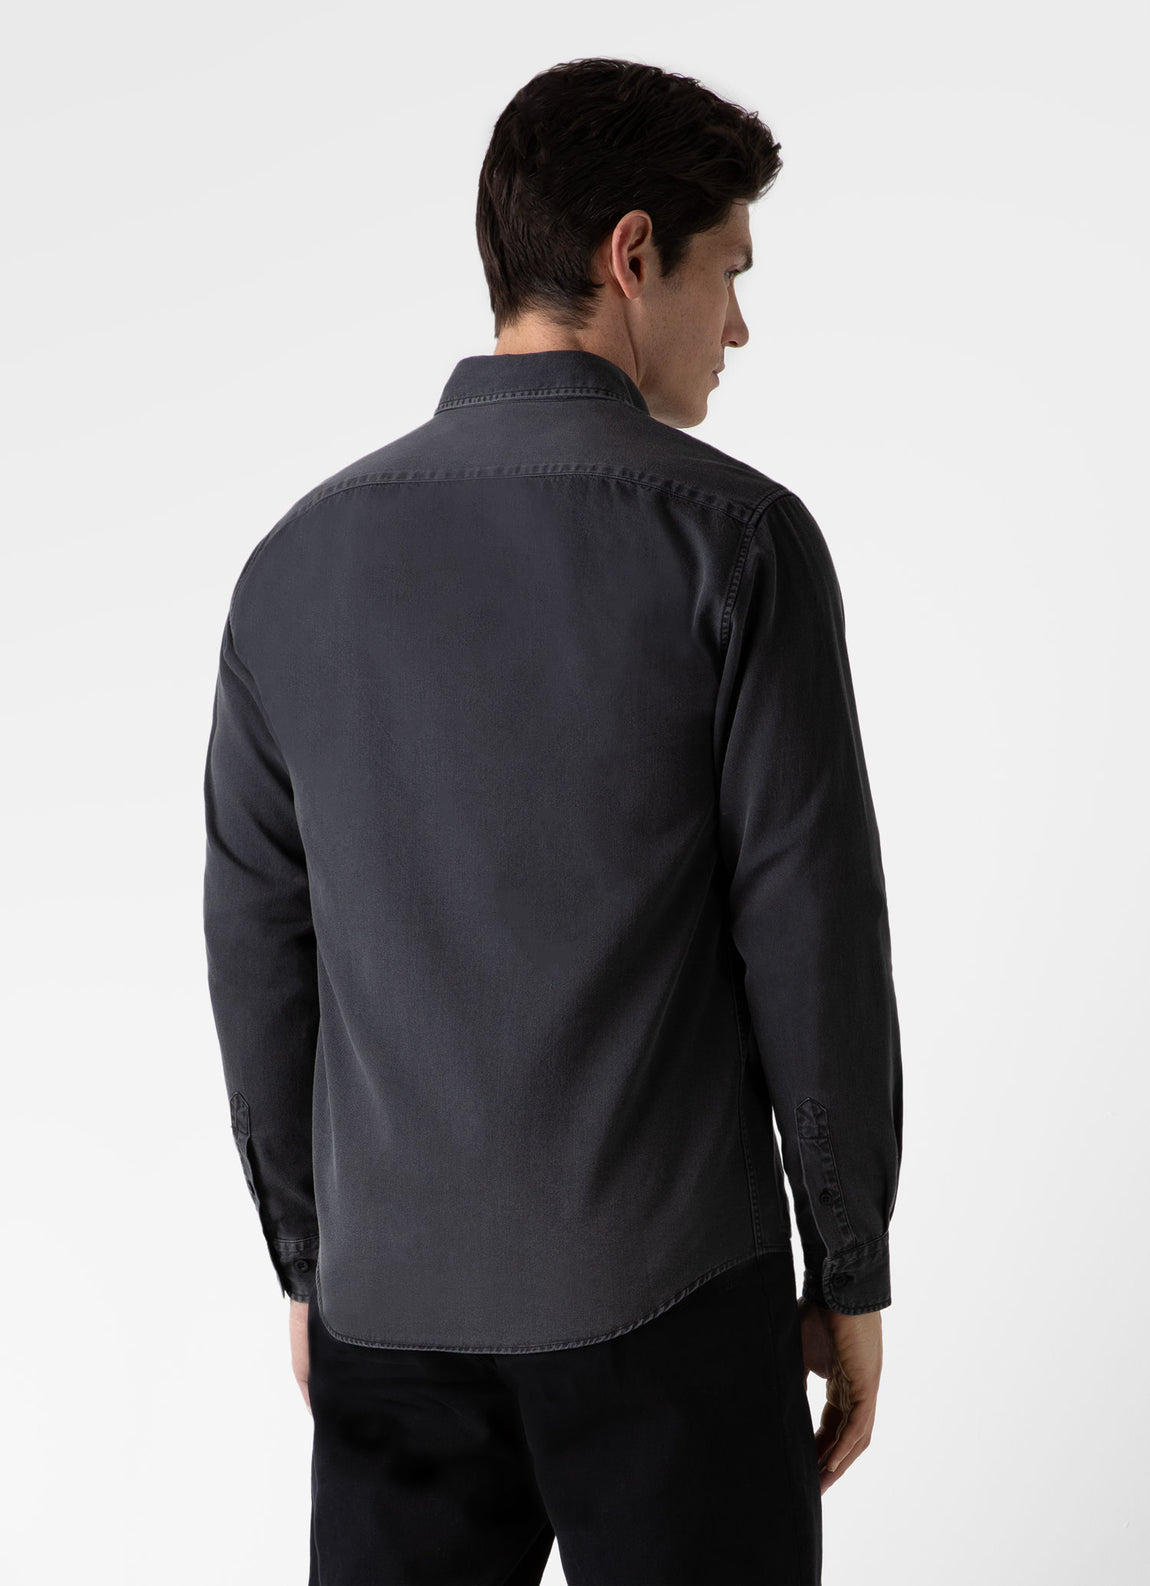 Men's Button Down Denim Shirt in Black Denim Wash | Sunspel